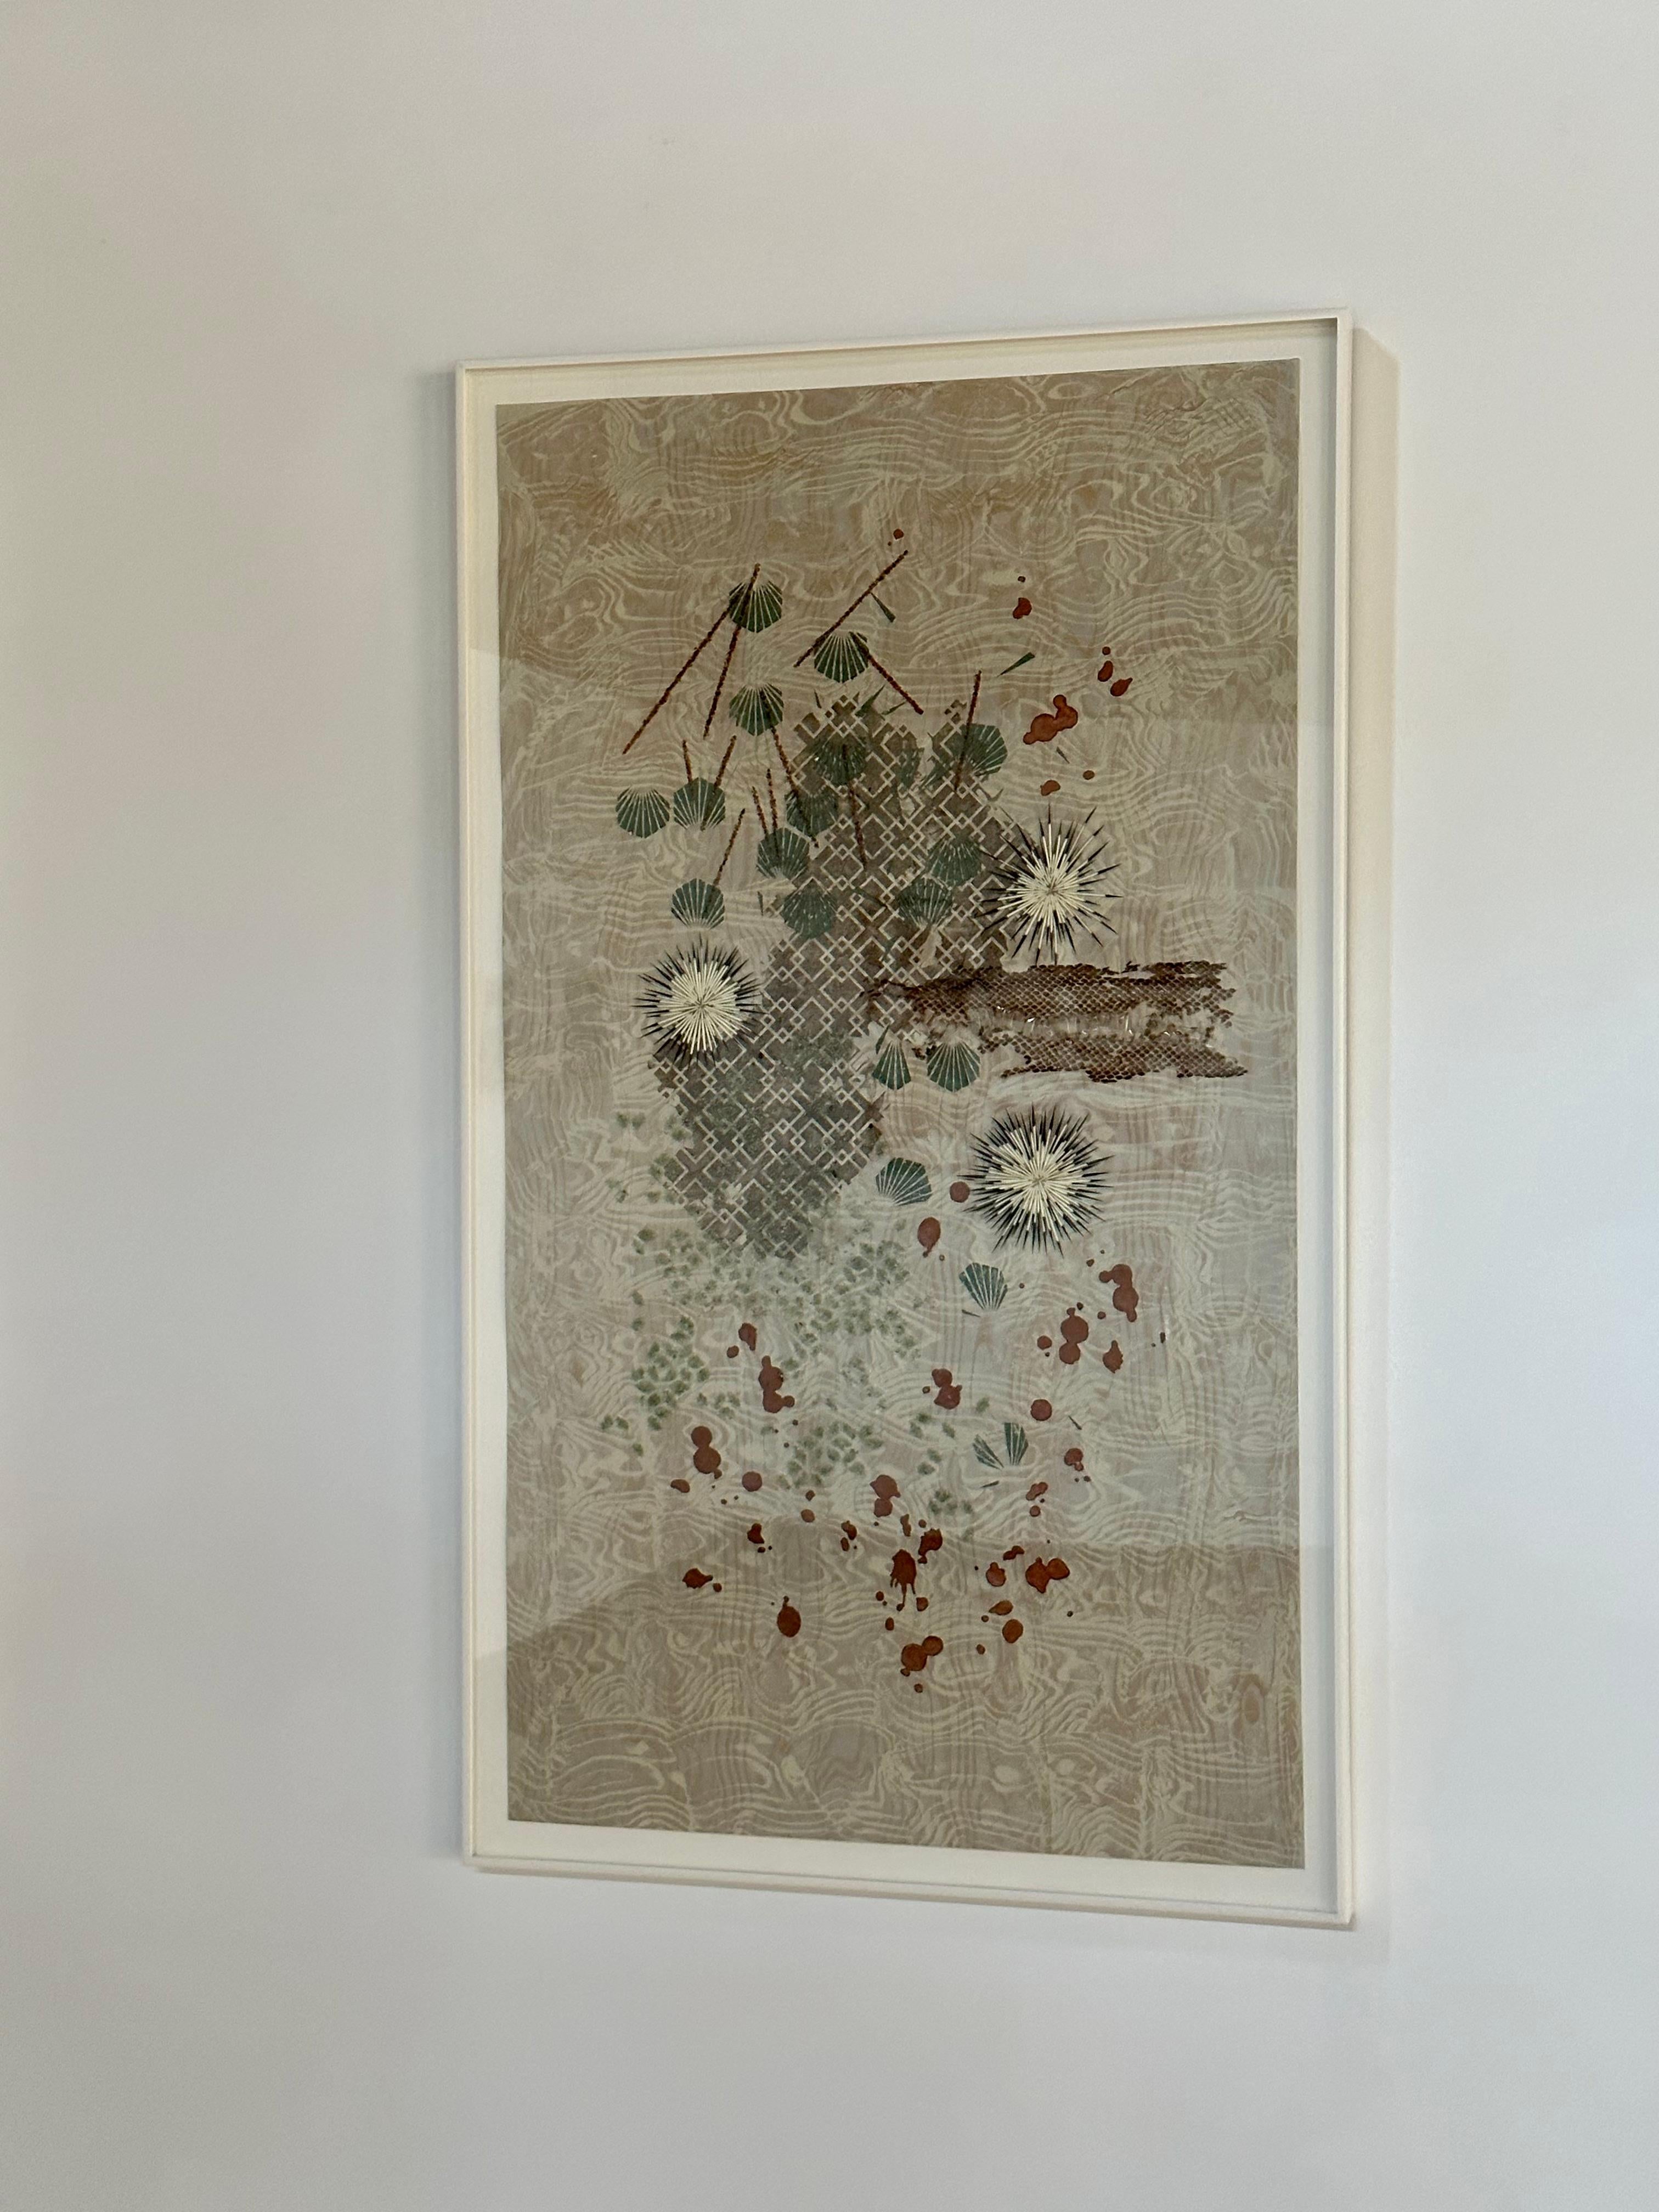 Tonbound, Jadegrün, Hellblau, gebranntes Rot, Silber, Mixed Media-Muster (Zeitgenössisch), Mixed Media Art, von Eleanor White